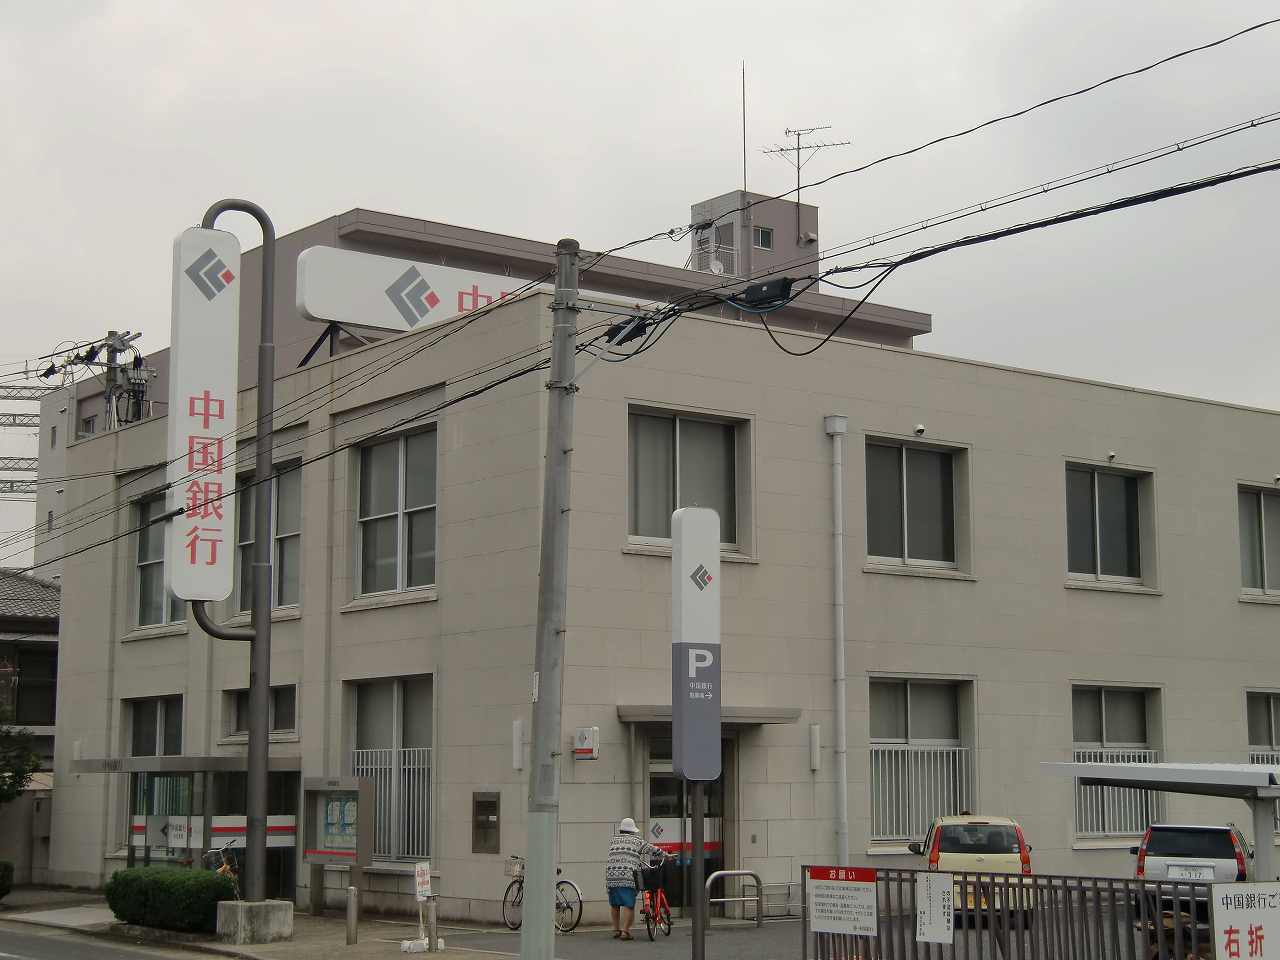 Bank. 708m to Bank of China Haraoshima Branch (Bank)